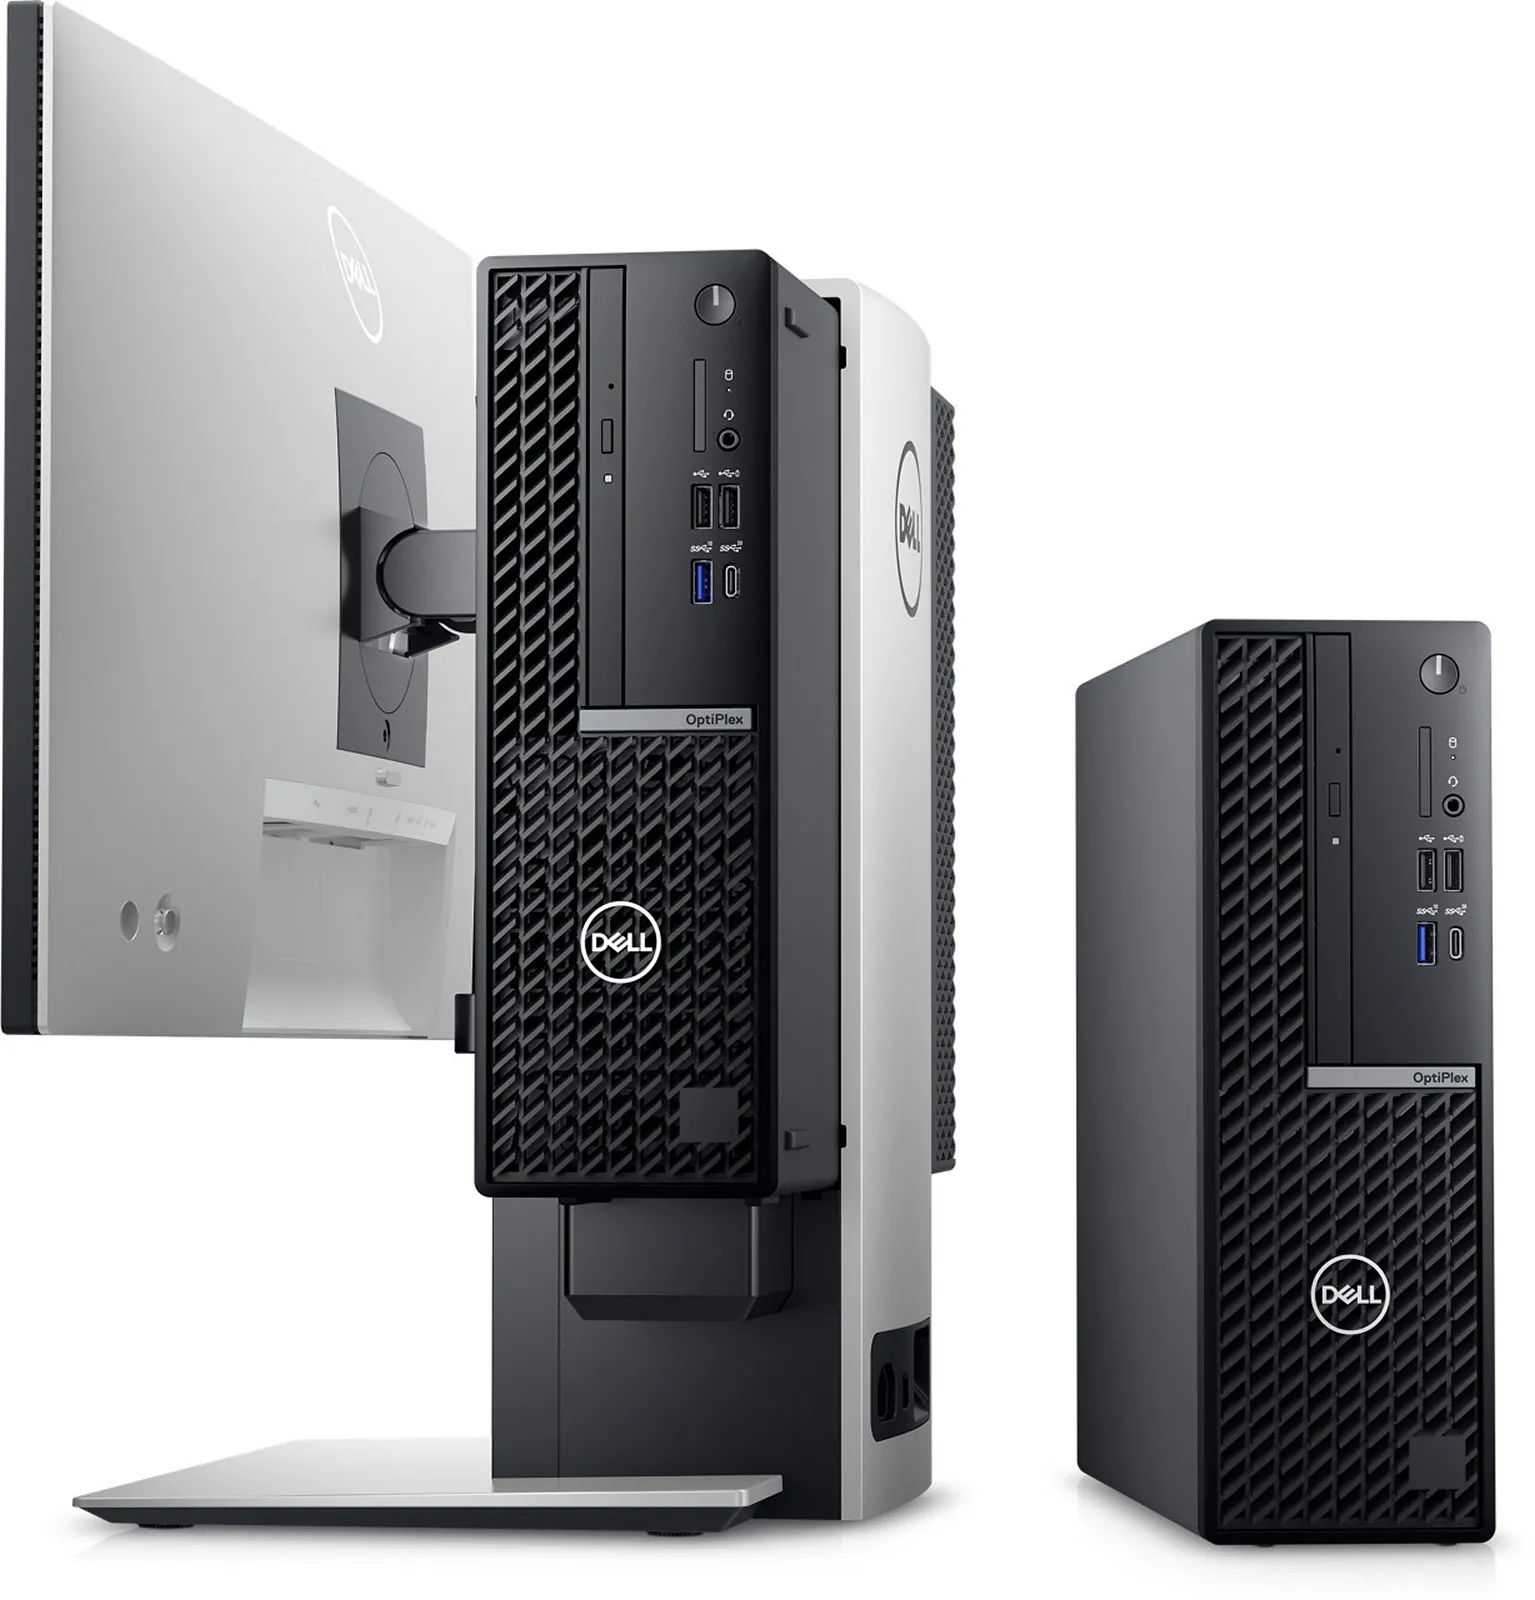 Dell giới thiệu dải máy tính cho doanh nghiệp và hệ sinh thái thương mại mới